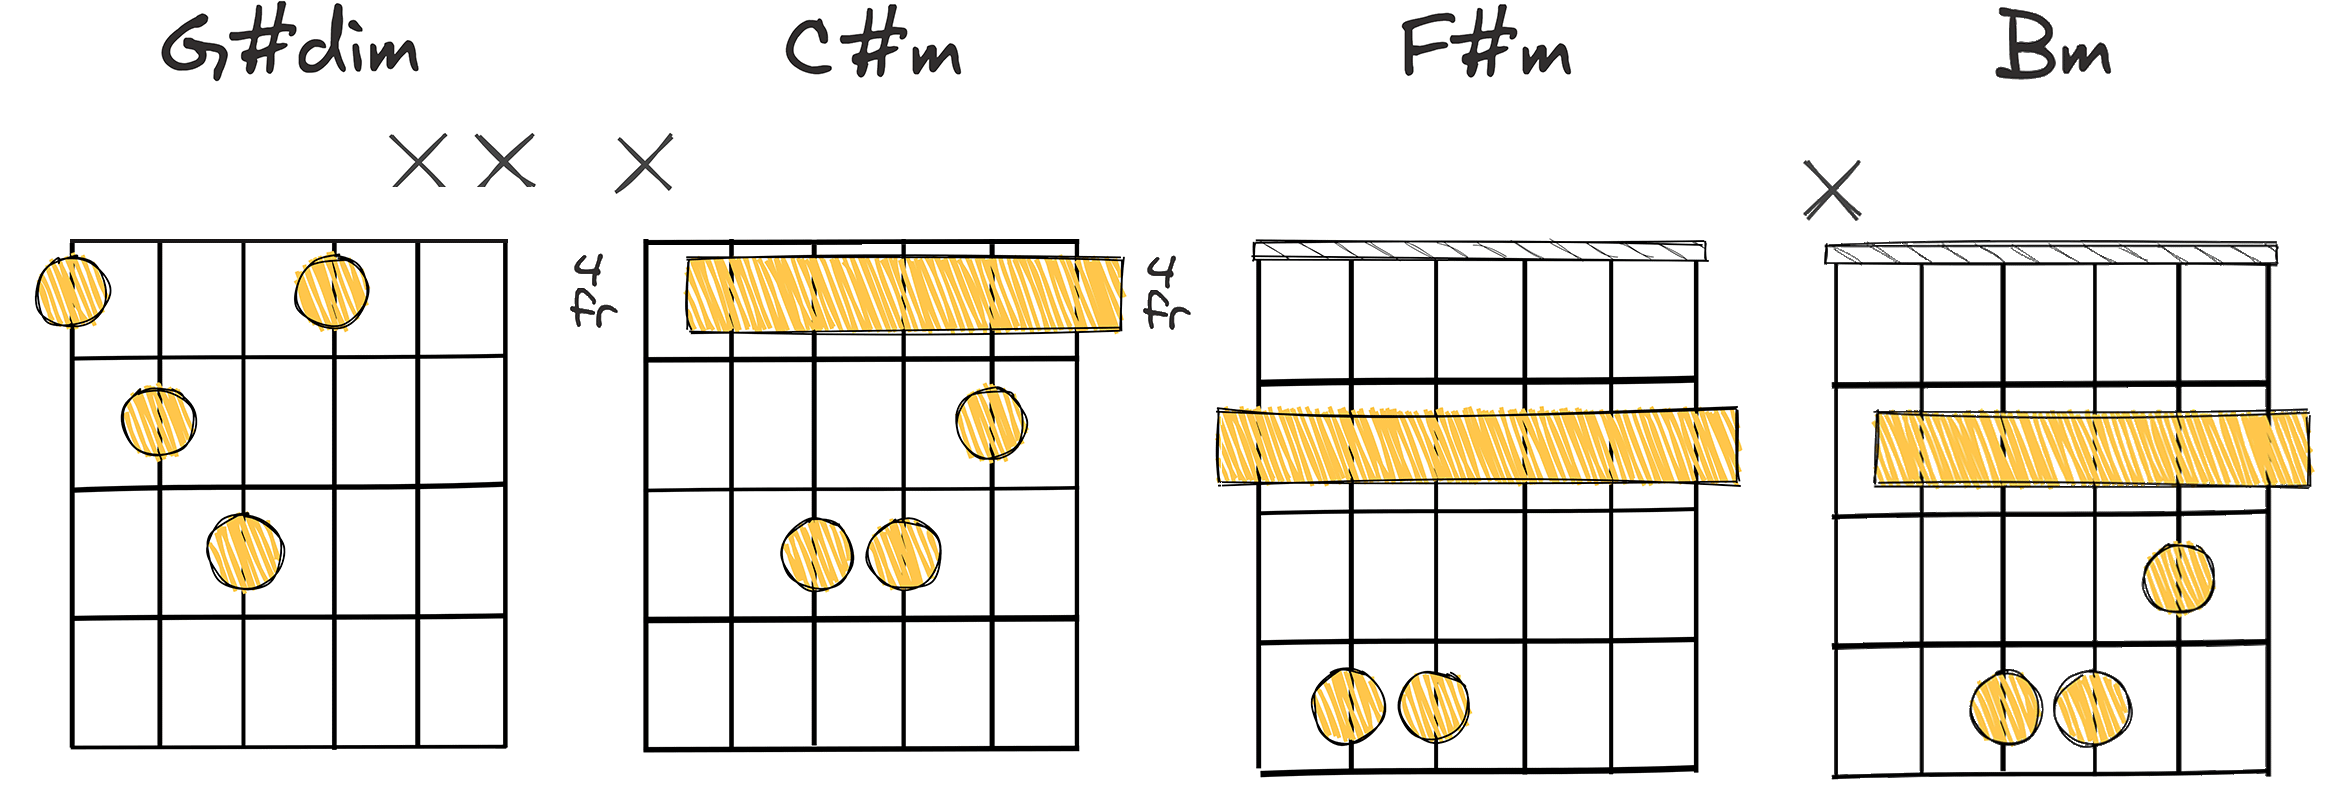 vii° - iii - vi - ii (7 - 3 - 6 - 2) chords diagram